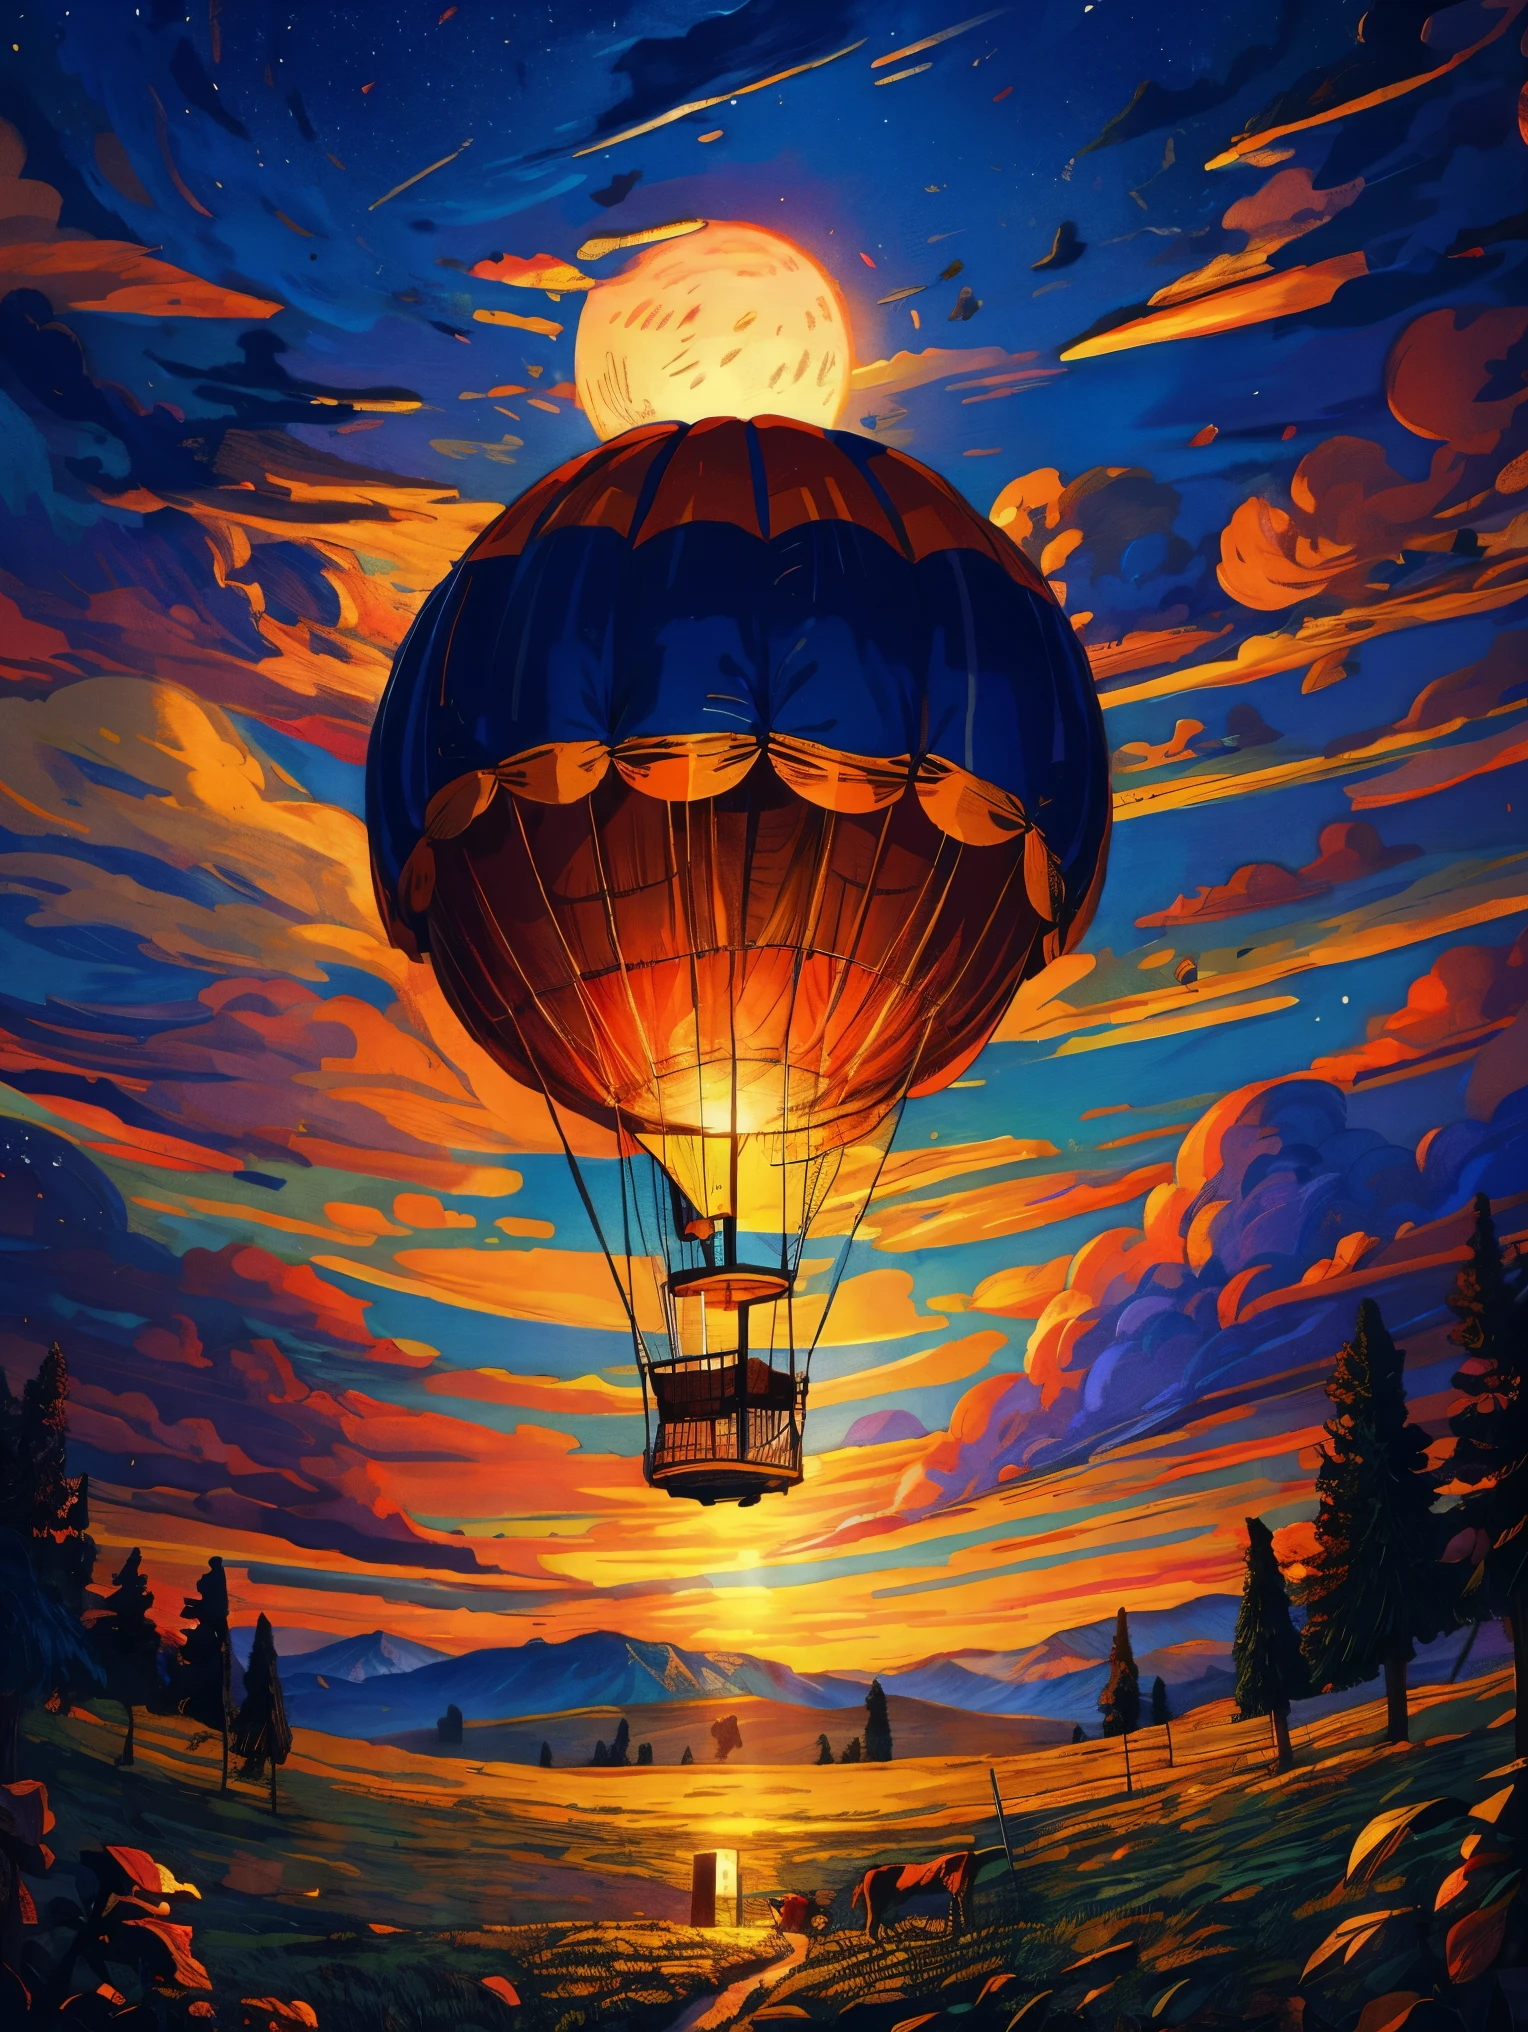 (壮大な紙の描画) の (大きい) 熱気球, ロマンチックな魔法の流れ, 星が輝く月夜, ゴシック様式の城, 山々